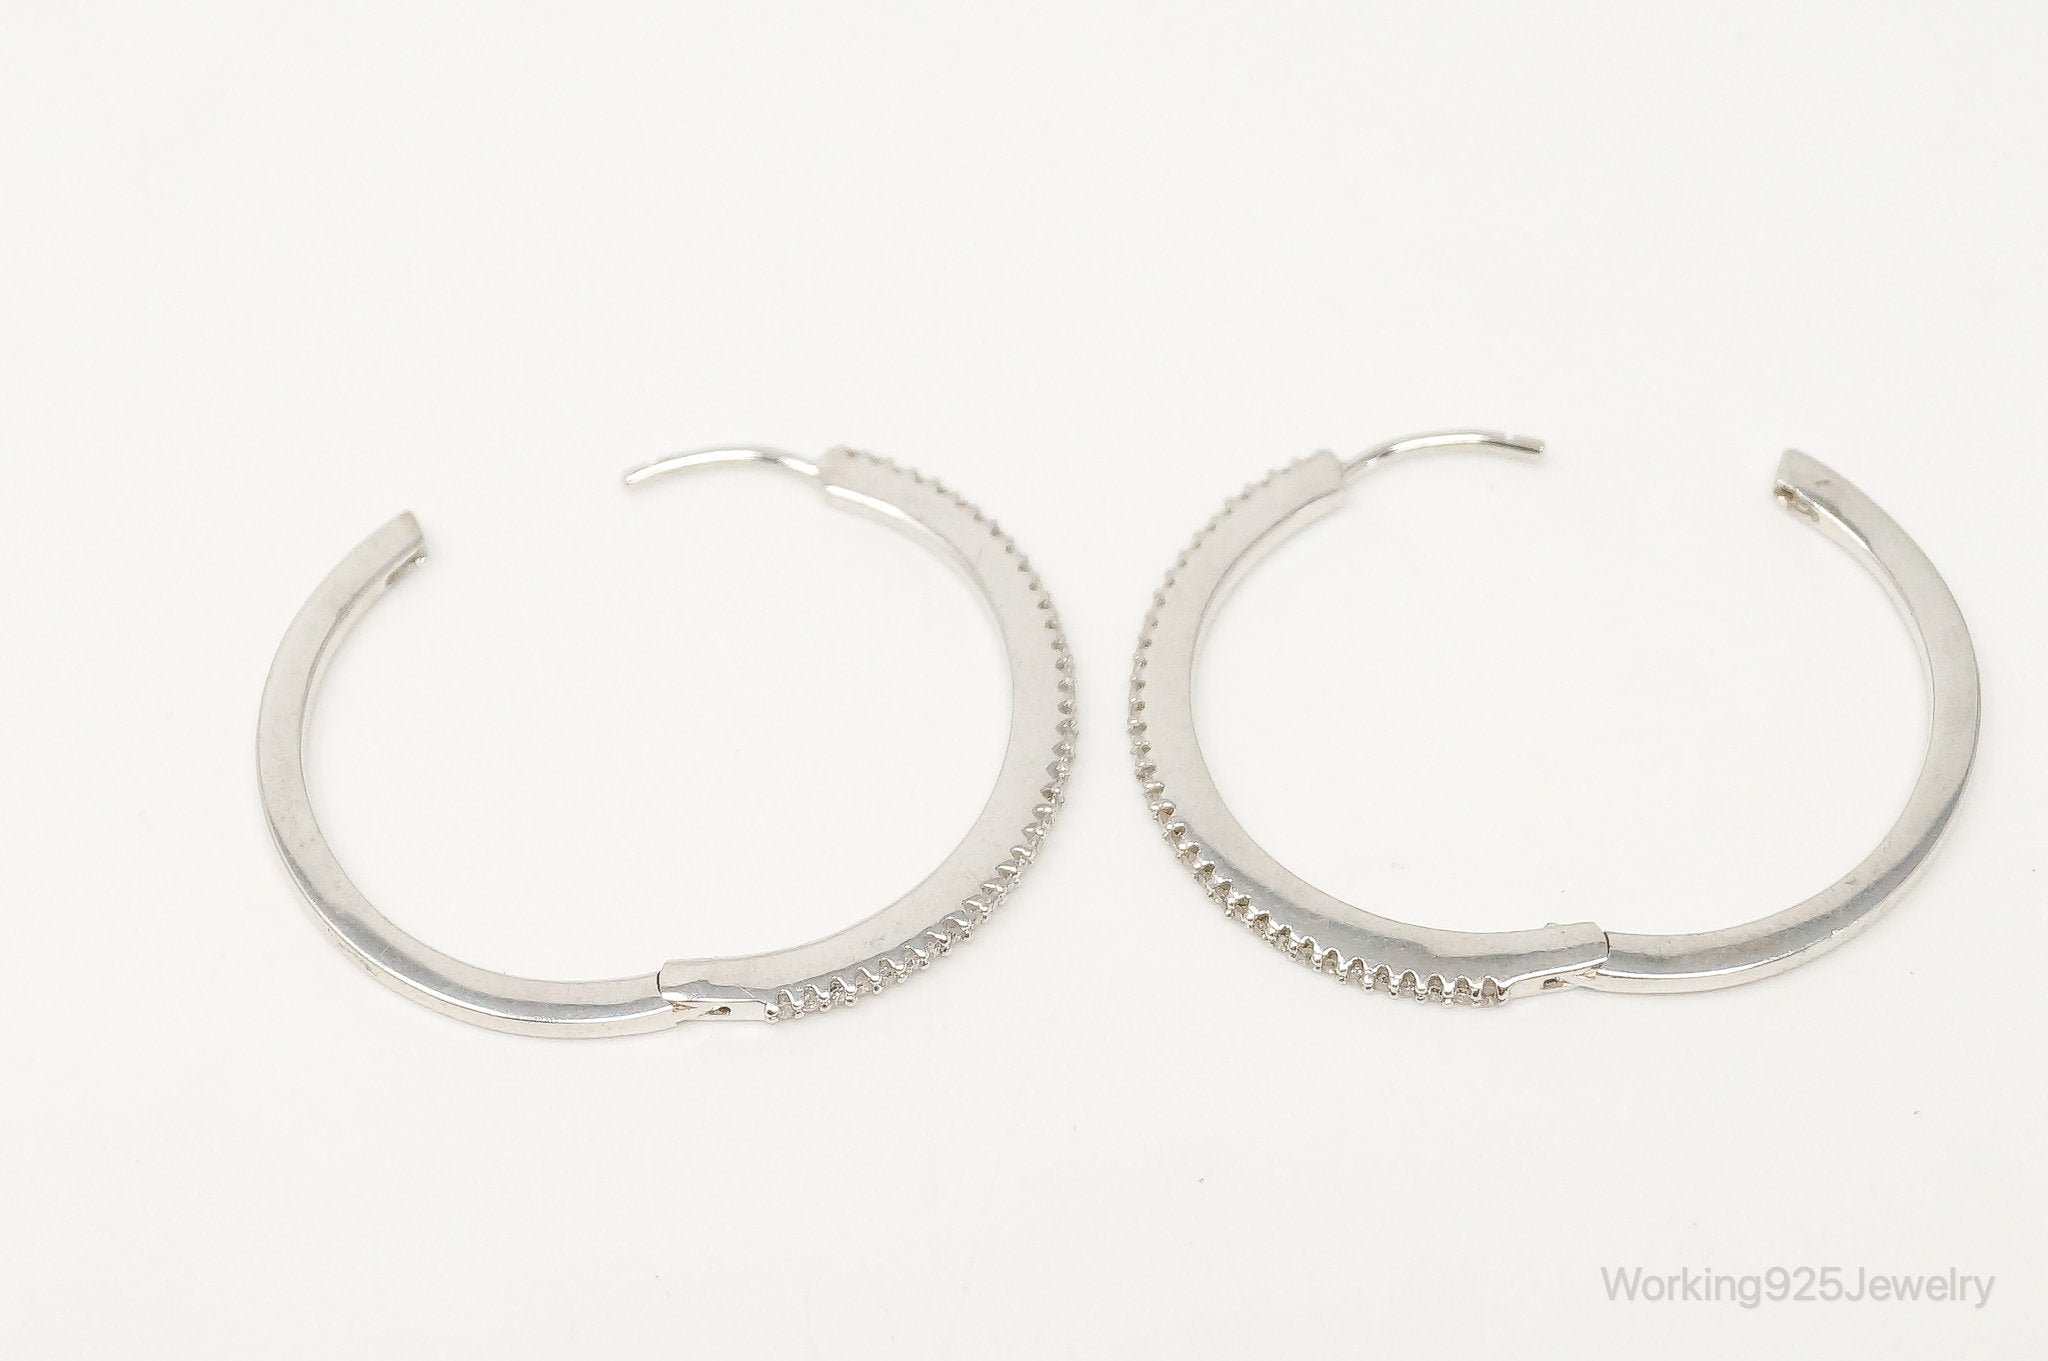 Designer Cubic Zirconia Sterling Silver Hoop Earrings